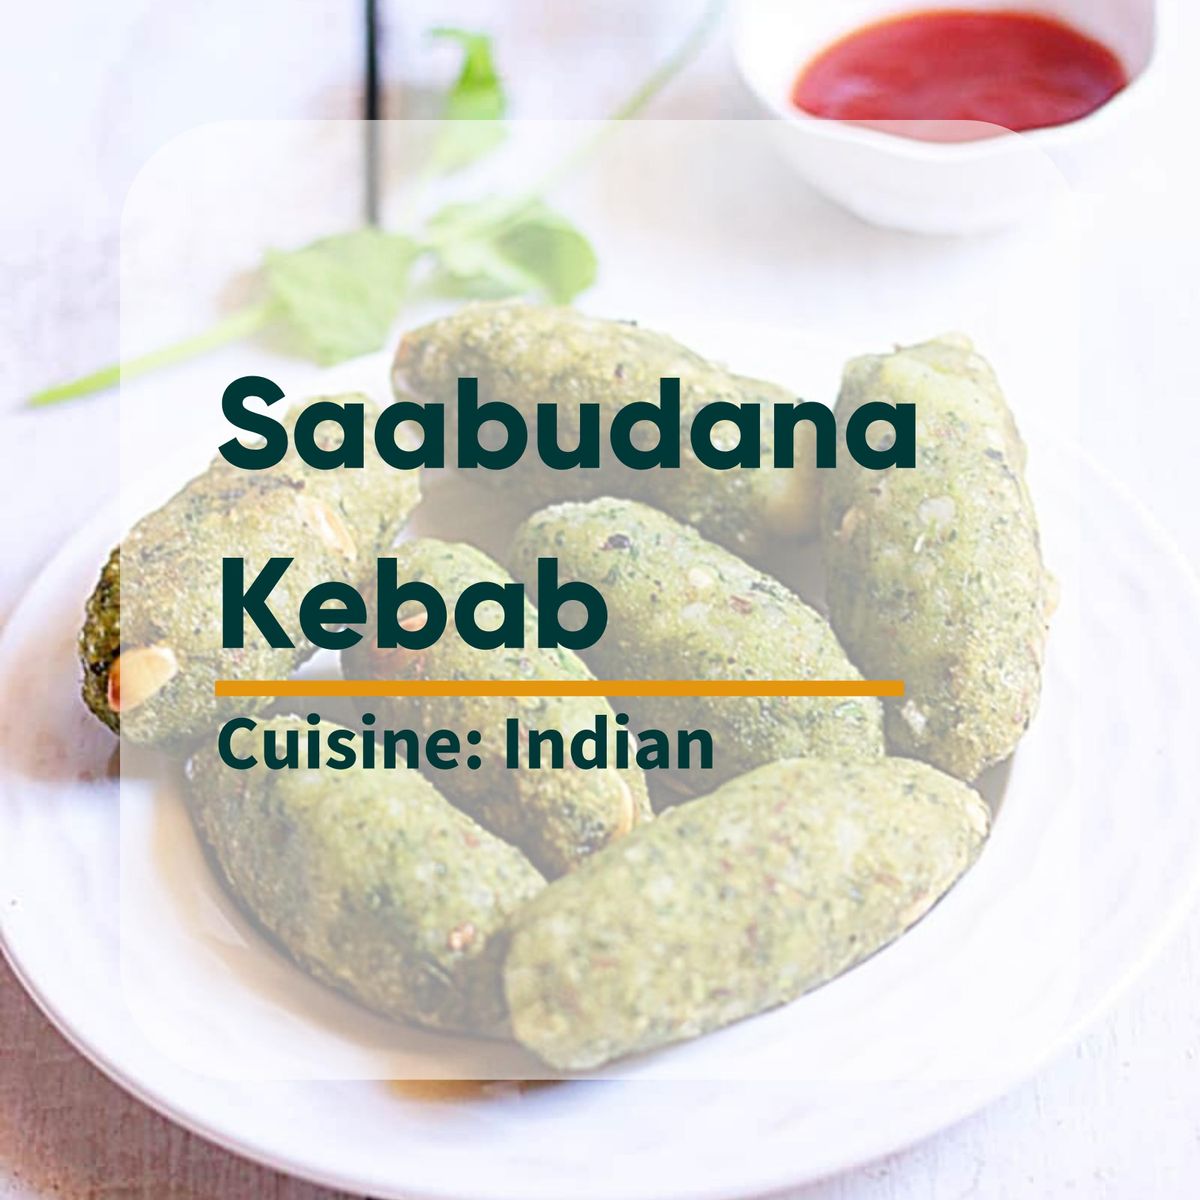 Saabudana Kebab Image